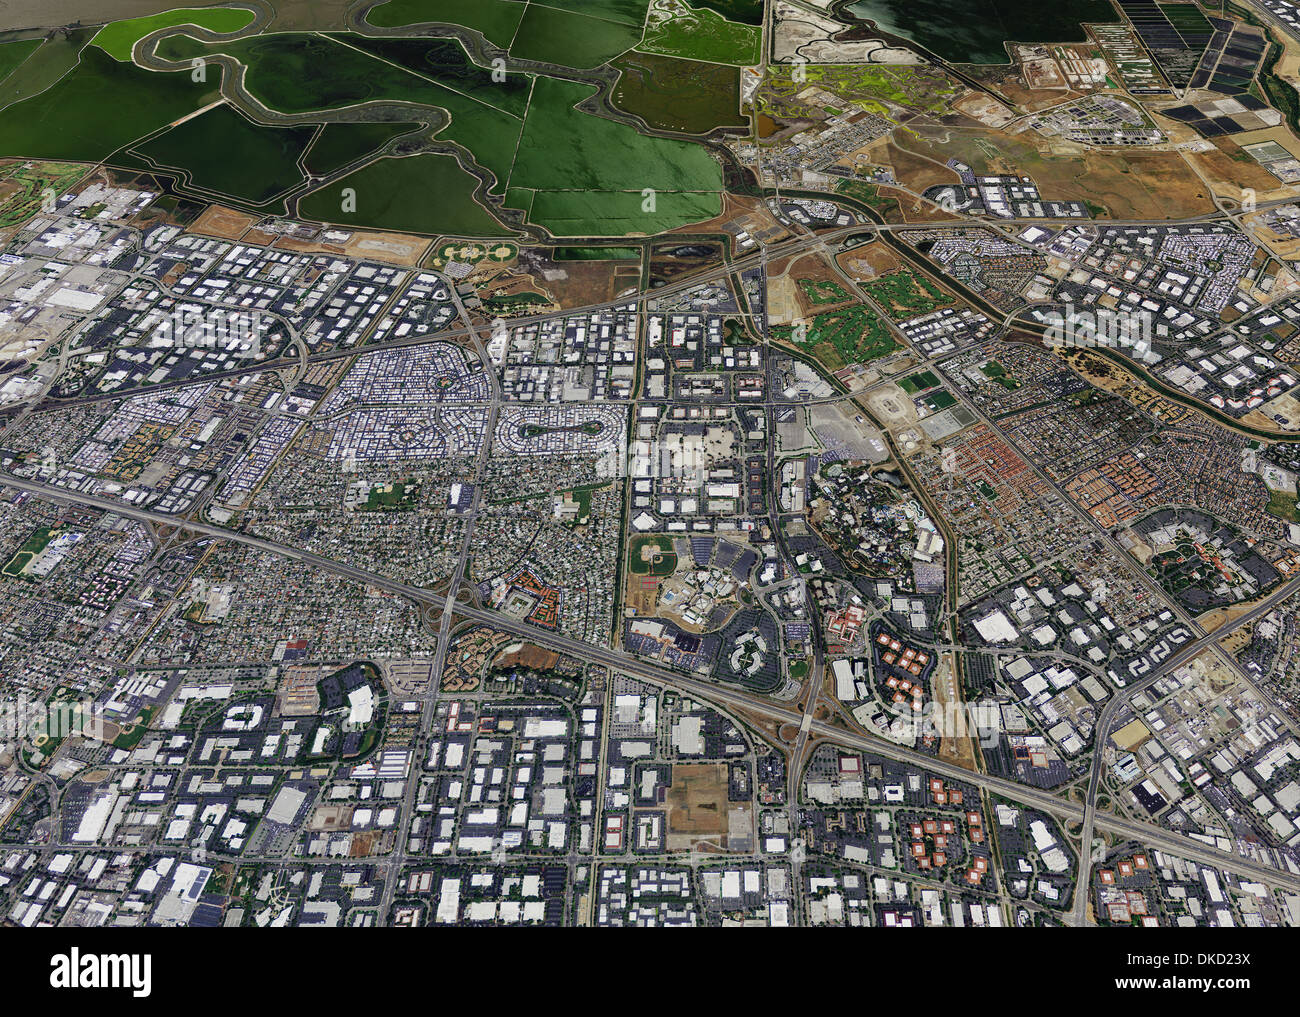 Photographie aérienne de la Silicon Valley, comté de Santa Clara, Californie Banque D'Images